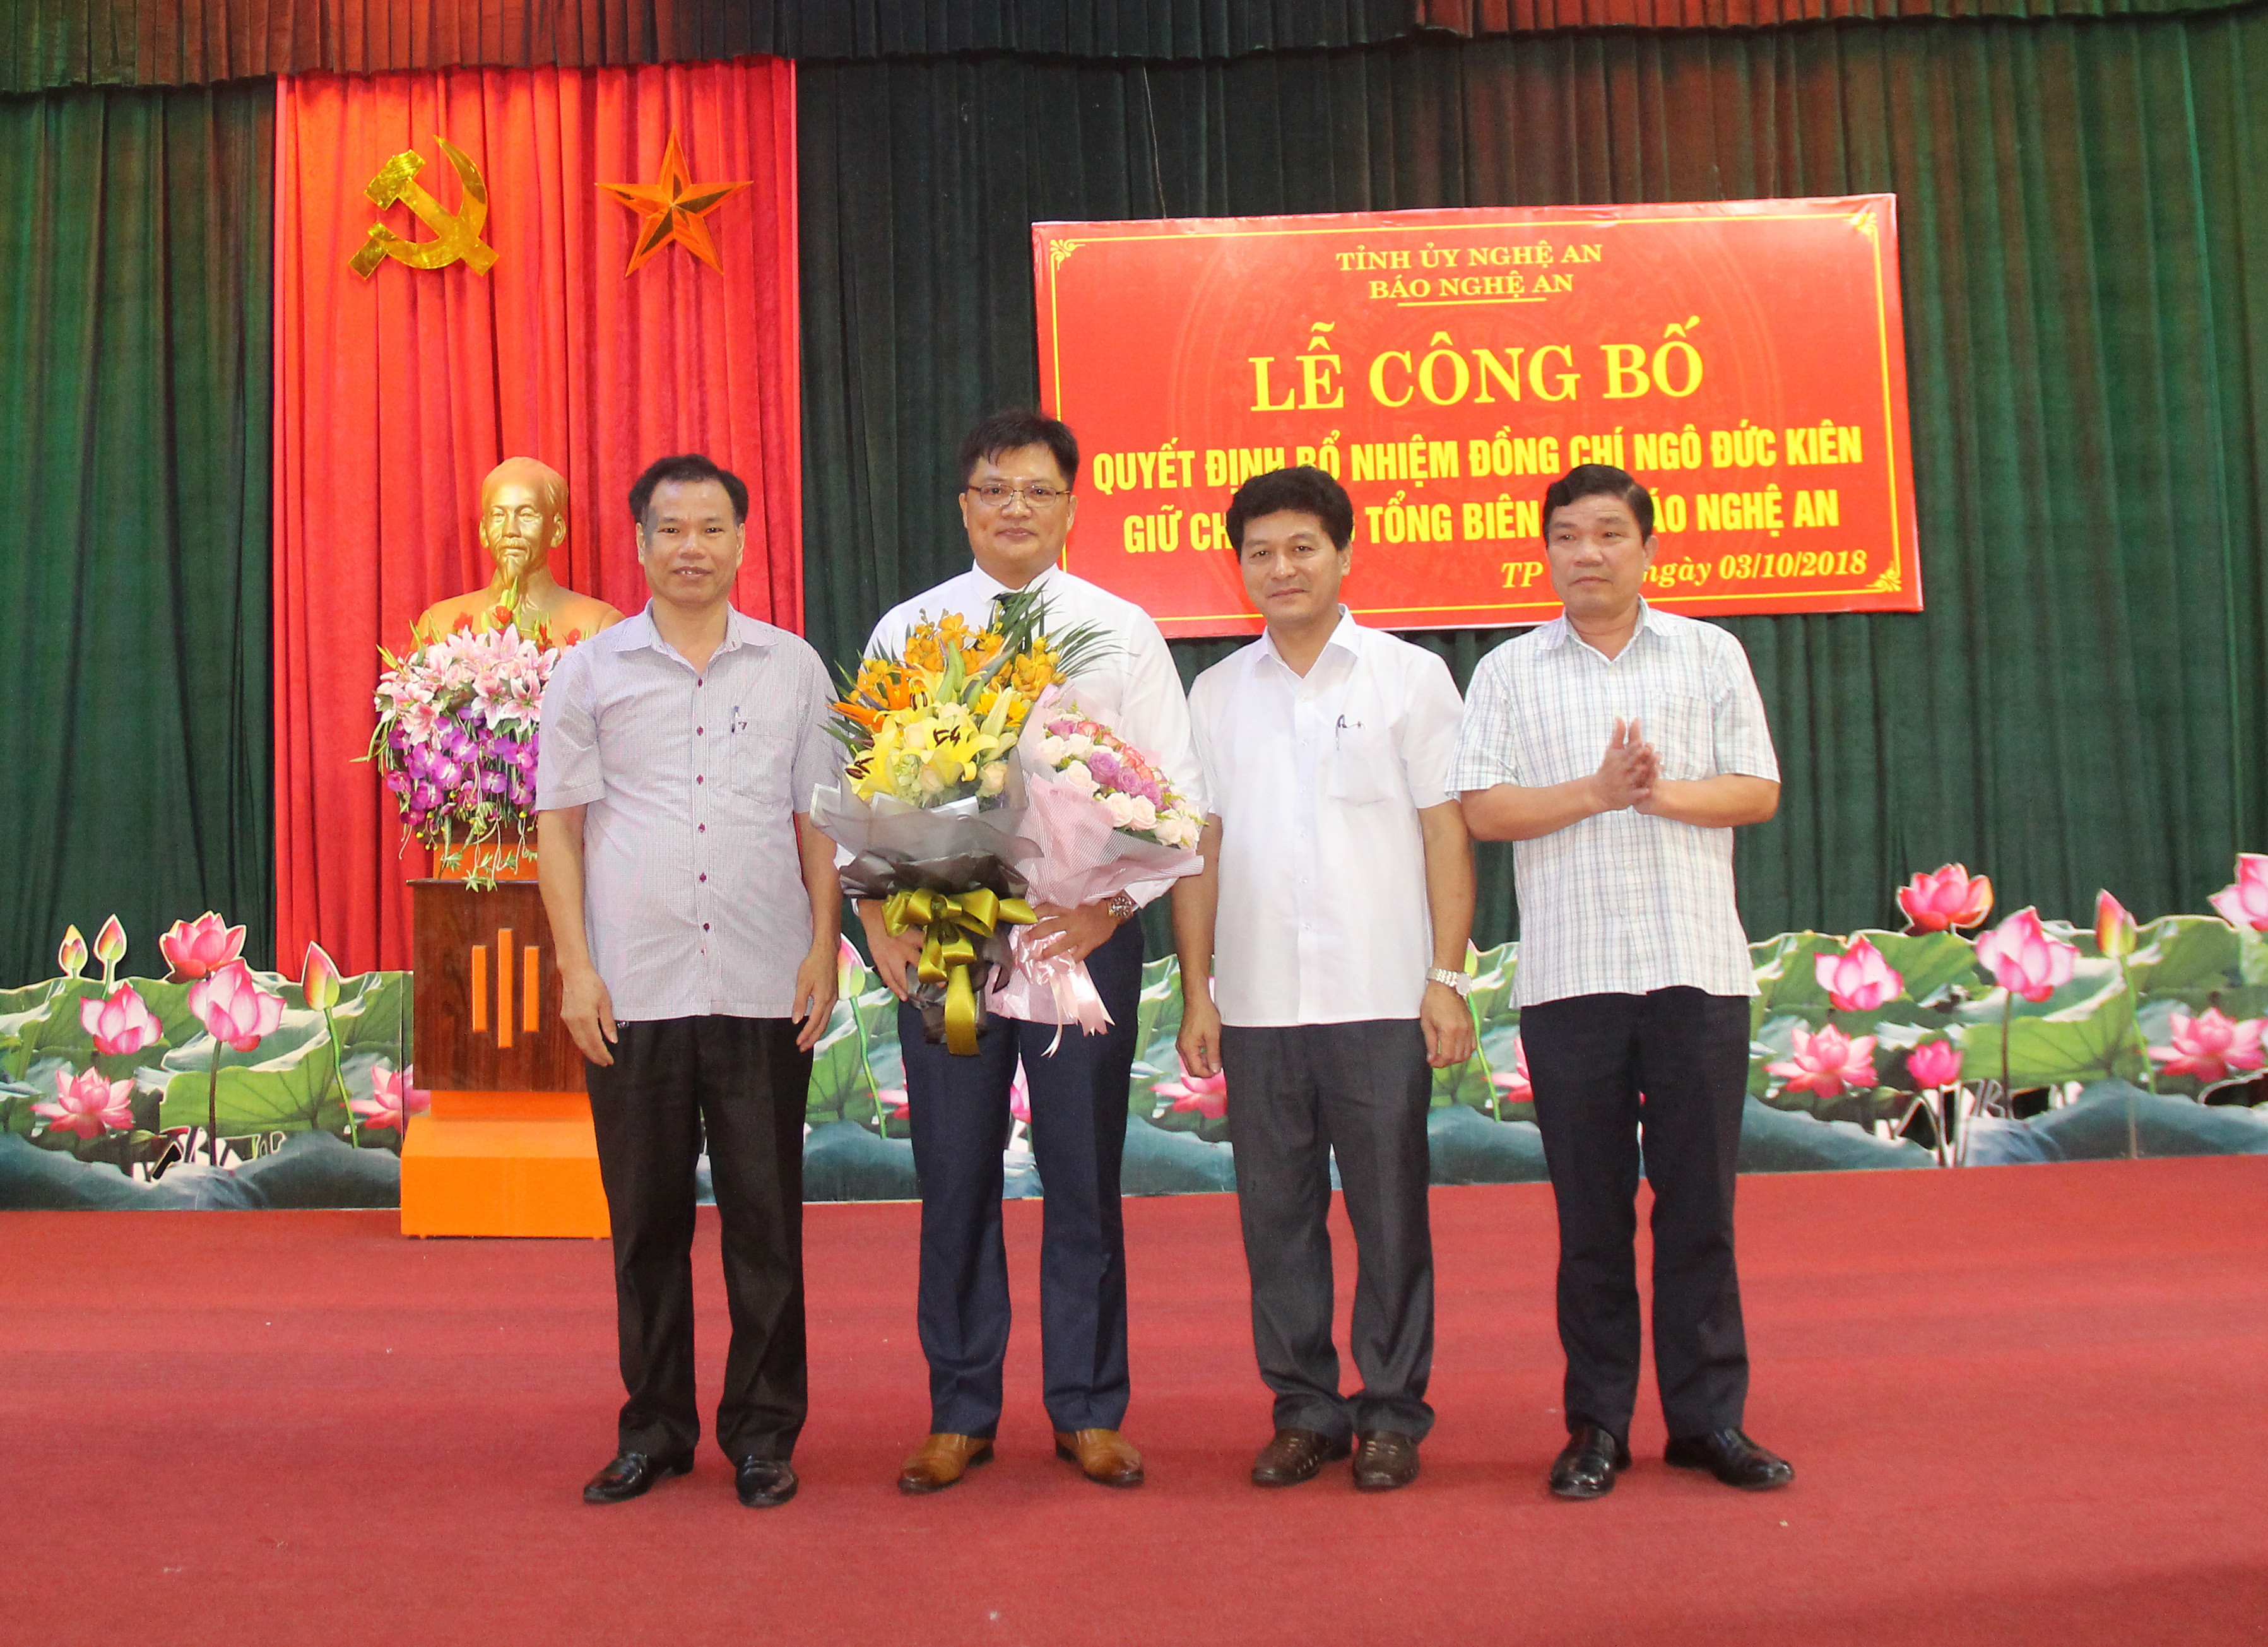 Lãnh đạo các Ban và Văn phòng Tỉnh ủy tặng hoa chức mừng đồng chí Ngô Đức Kiên. Ảnh: Mai Hoa